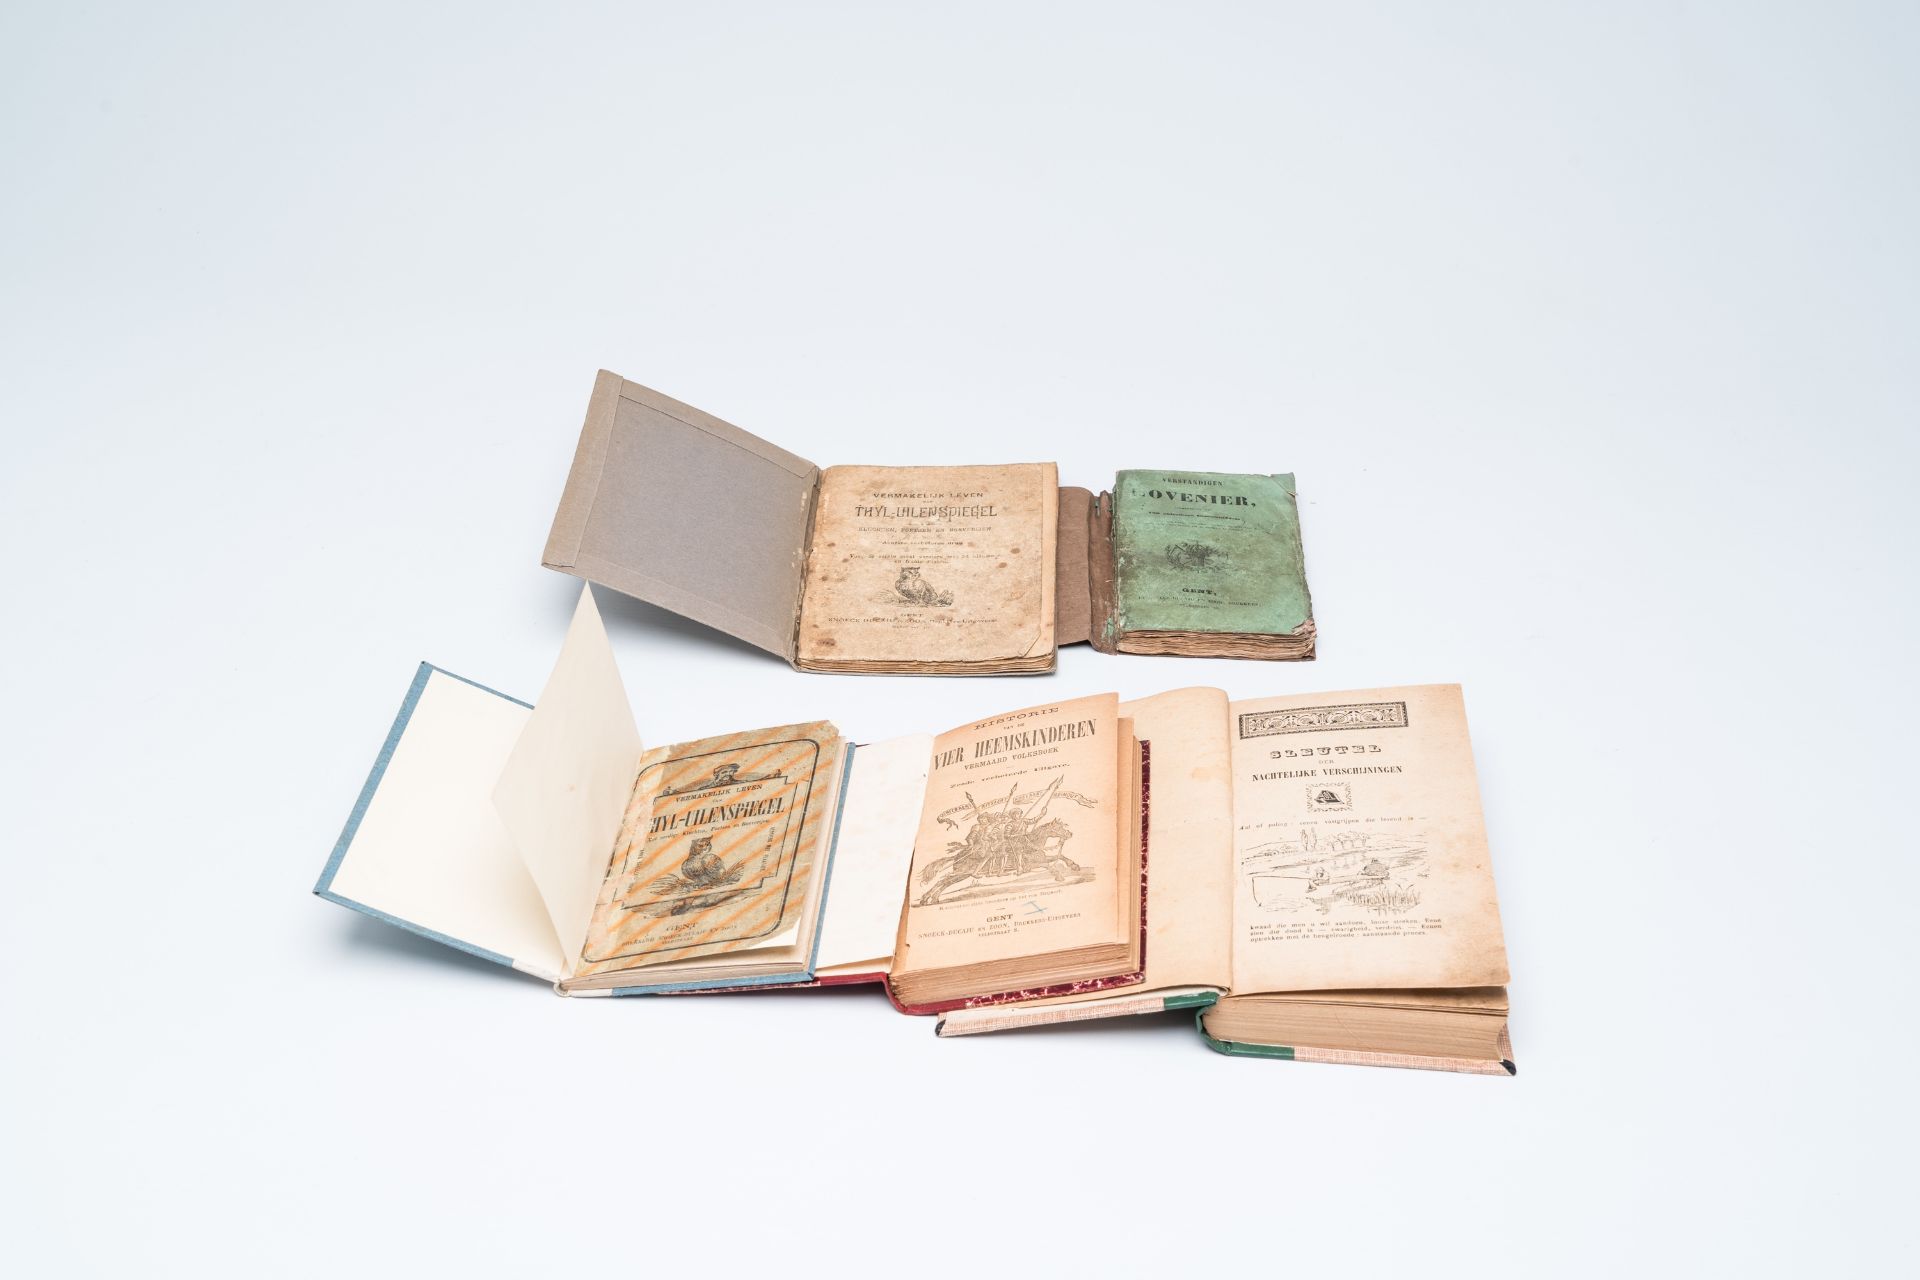 Nineteen various chapbooks printed in Ghent by 'Snoeck-Ducaju en zoon', 19th C. - Image 4 of 4